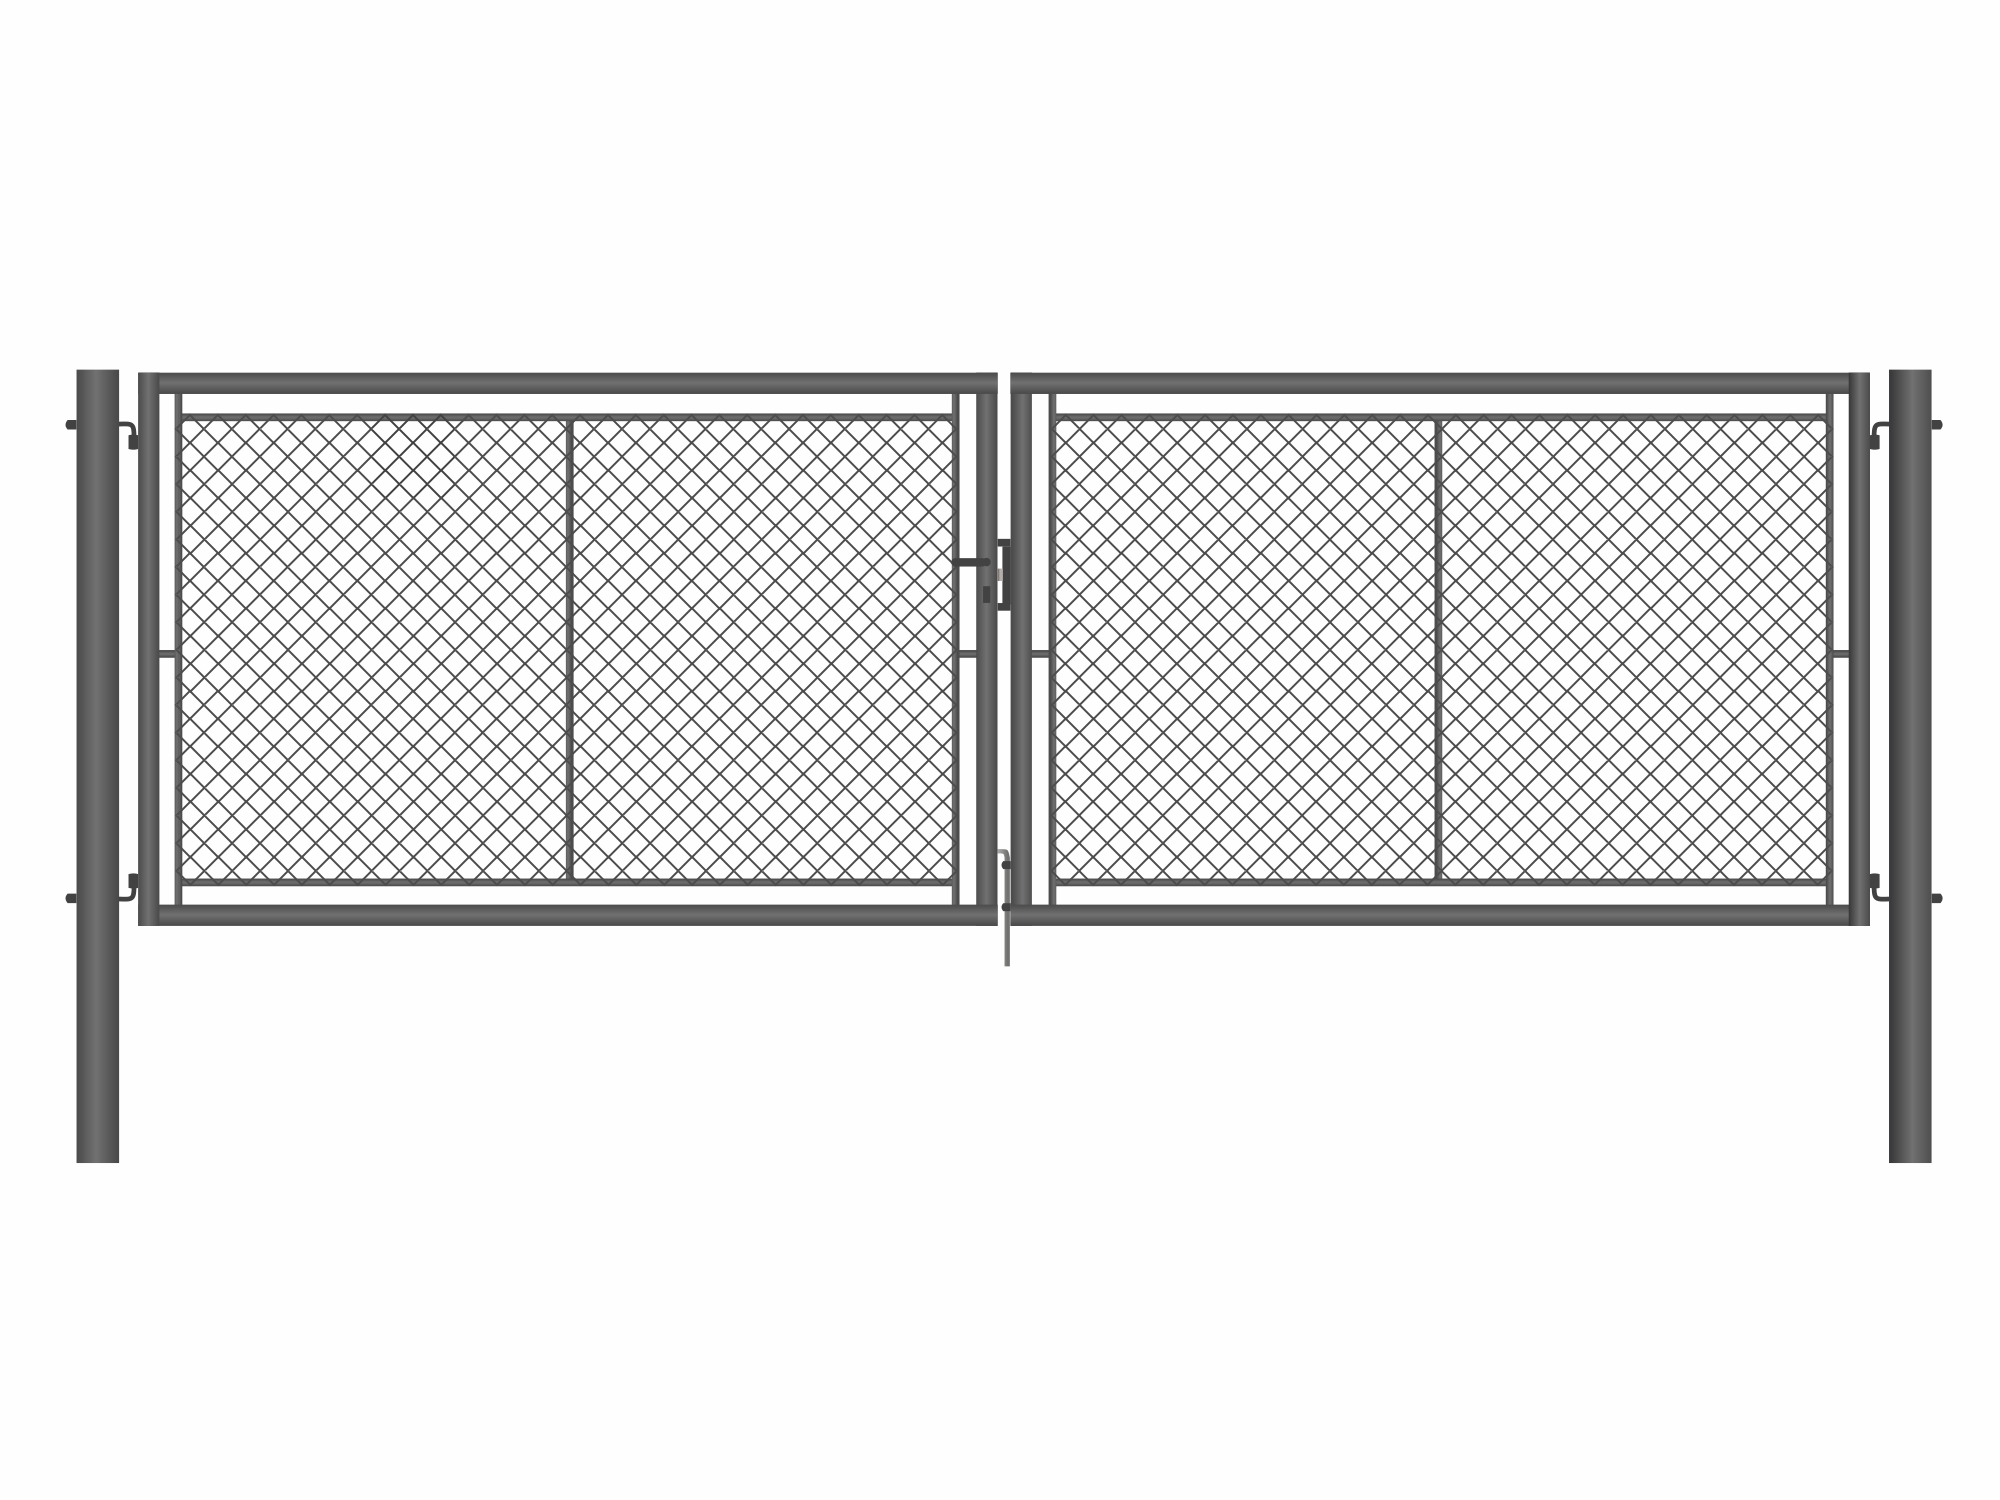 Brána zahradní dvoukřídlá antracit, výška 175 x 500 cm, FAB, s výplní klasického pletiva PLOTY Sklad5 9895 535